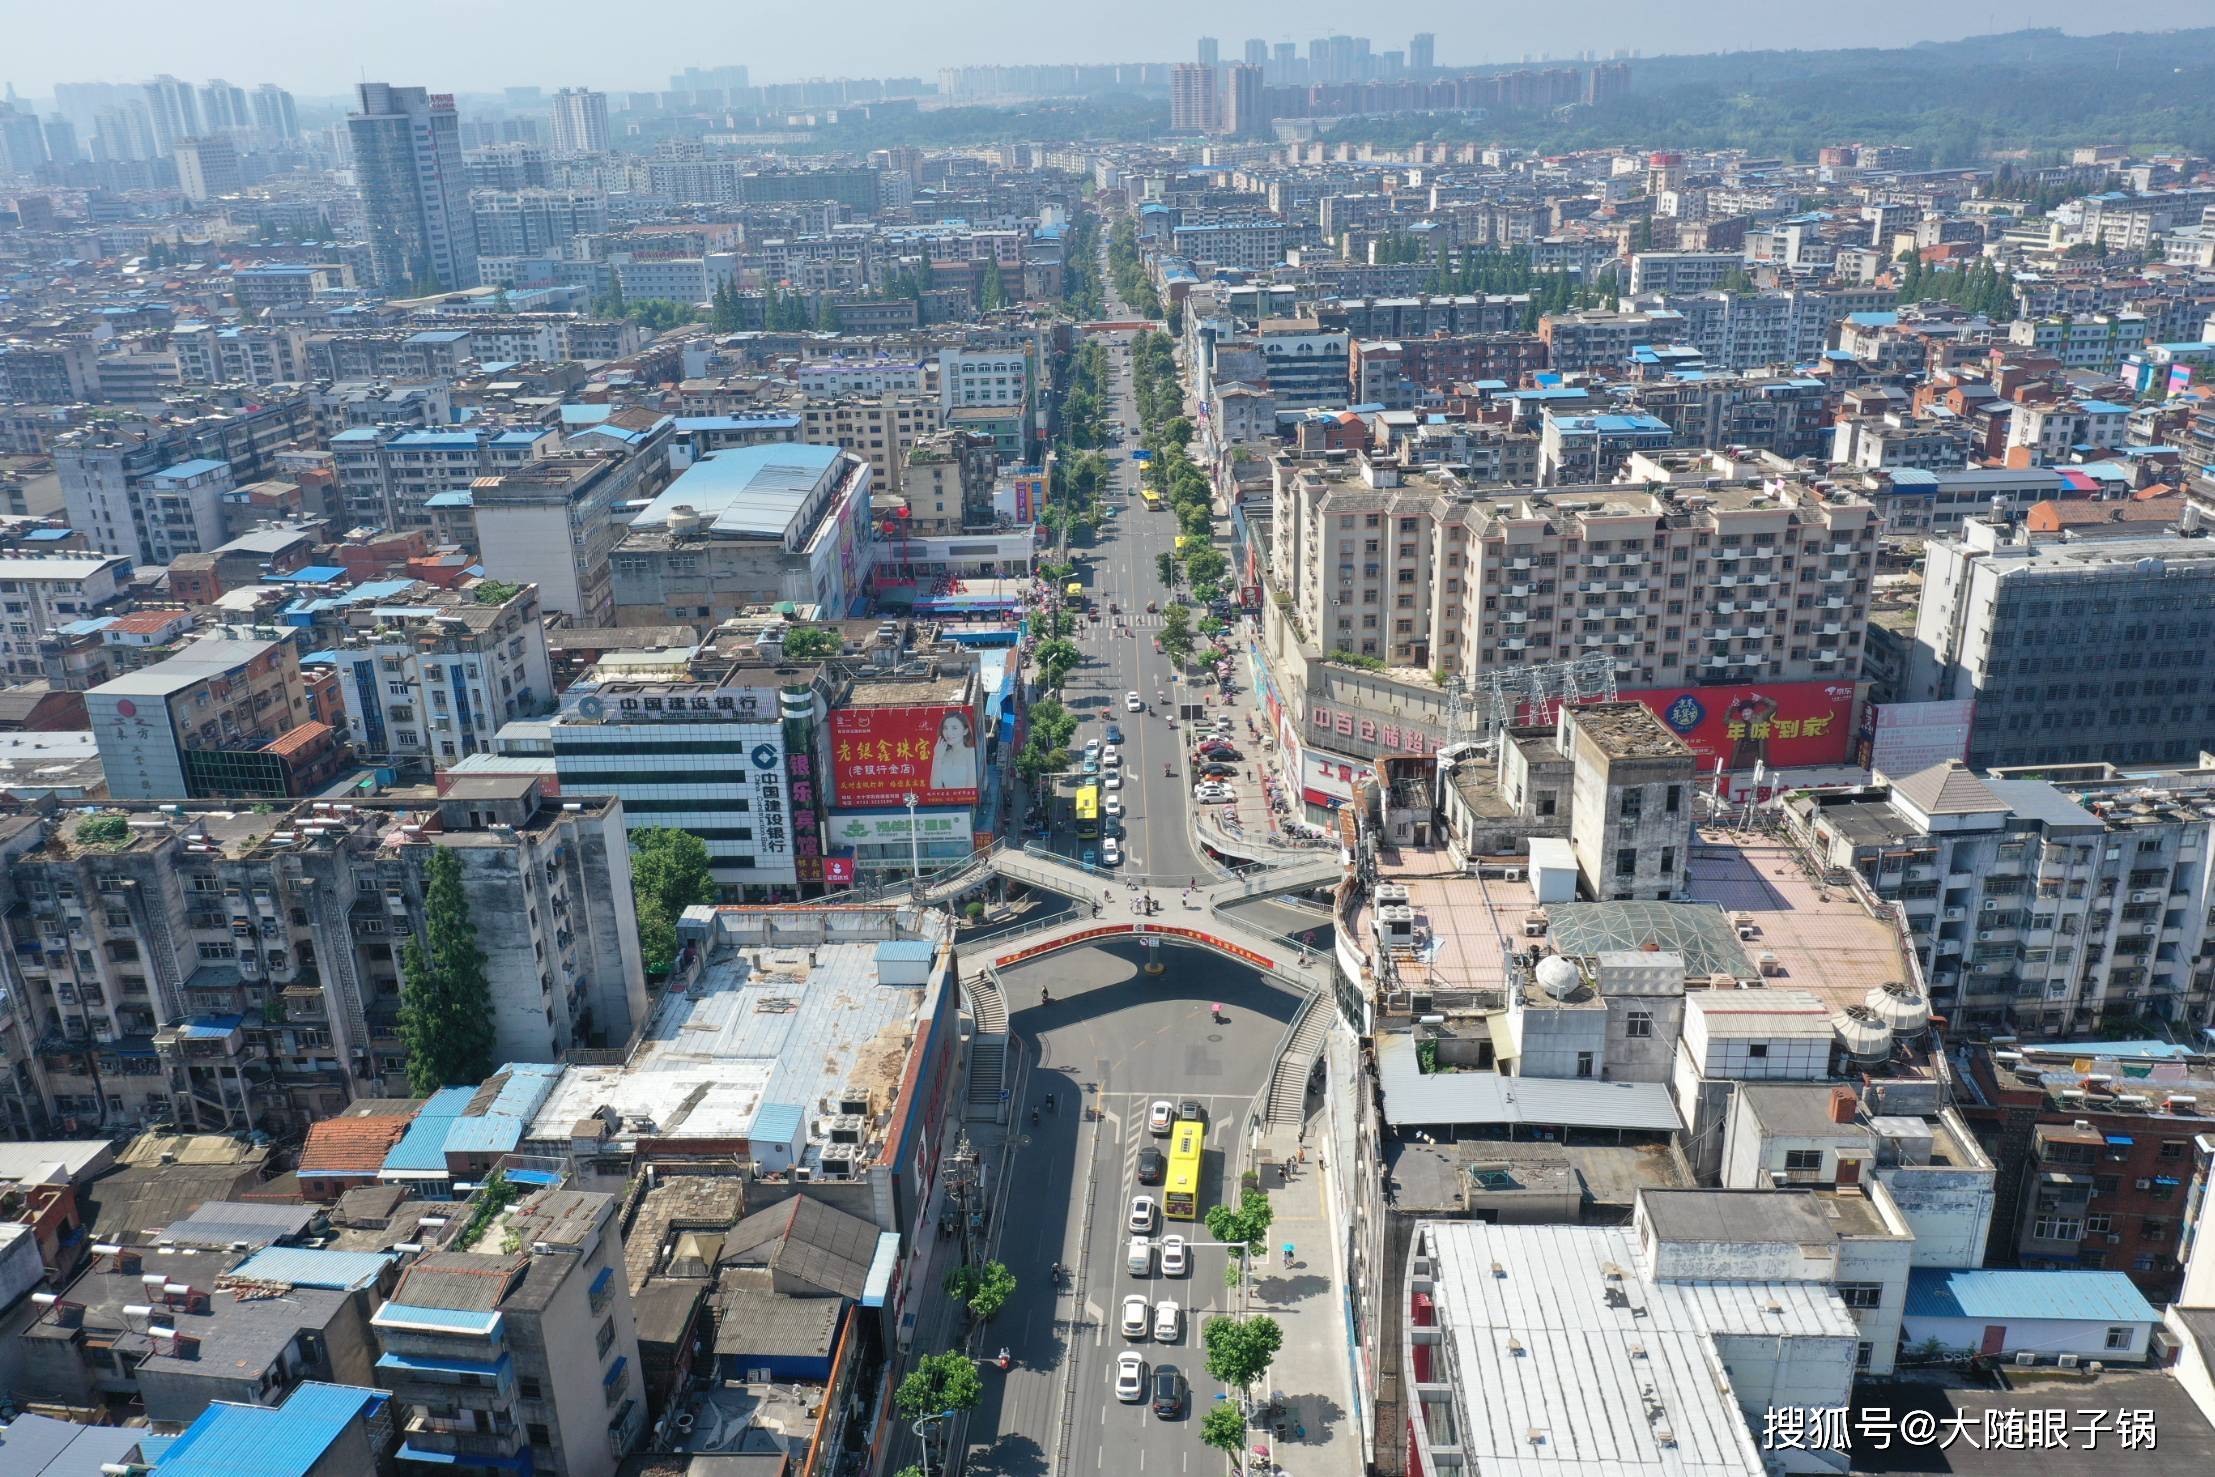 【随州城市印记老照片】大十字街:一横一竖都是随州最繁盛之处